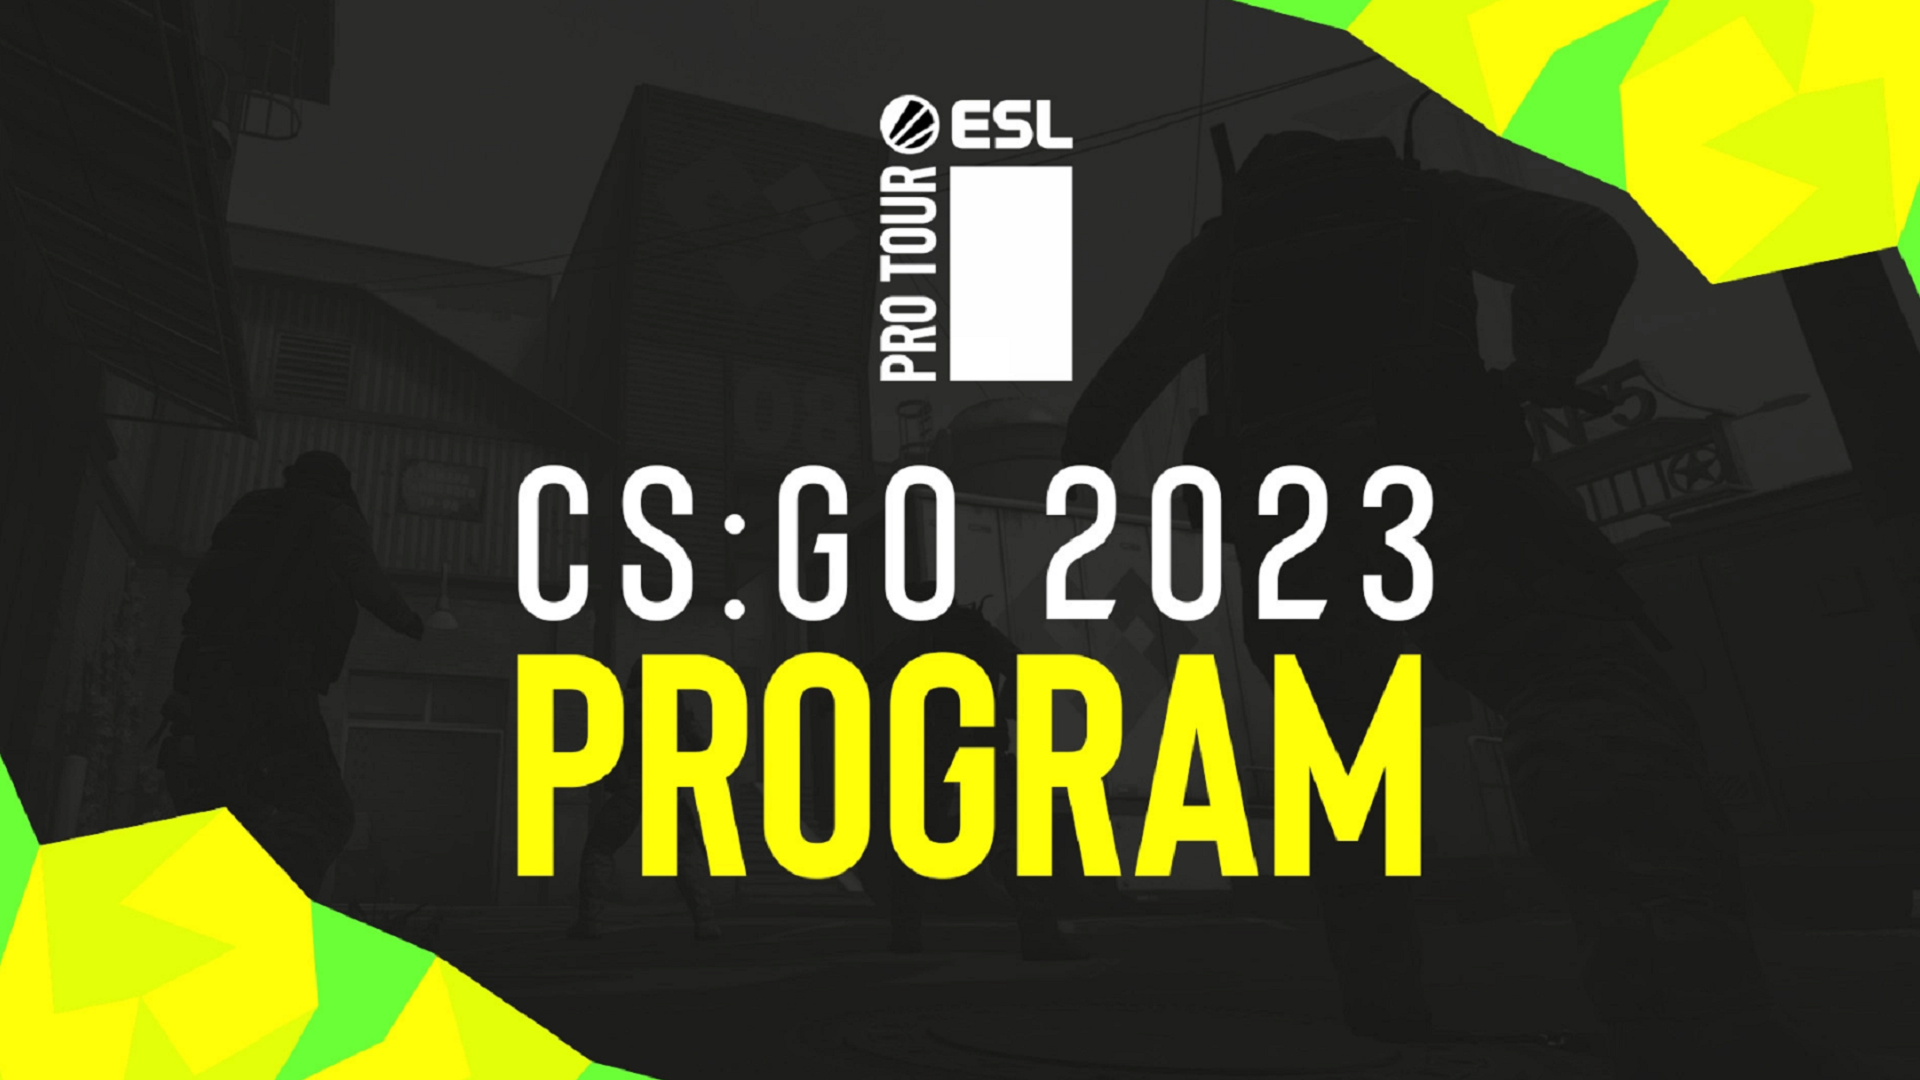 ESL представила турнирный план по CS:GO на 2023 год